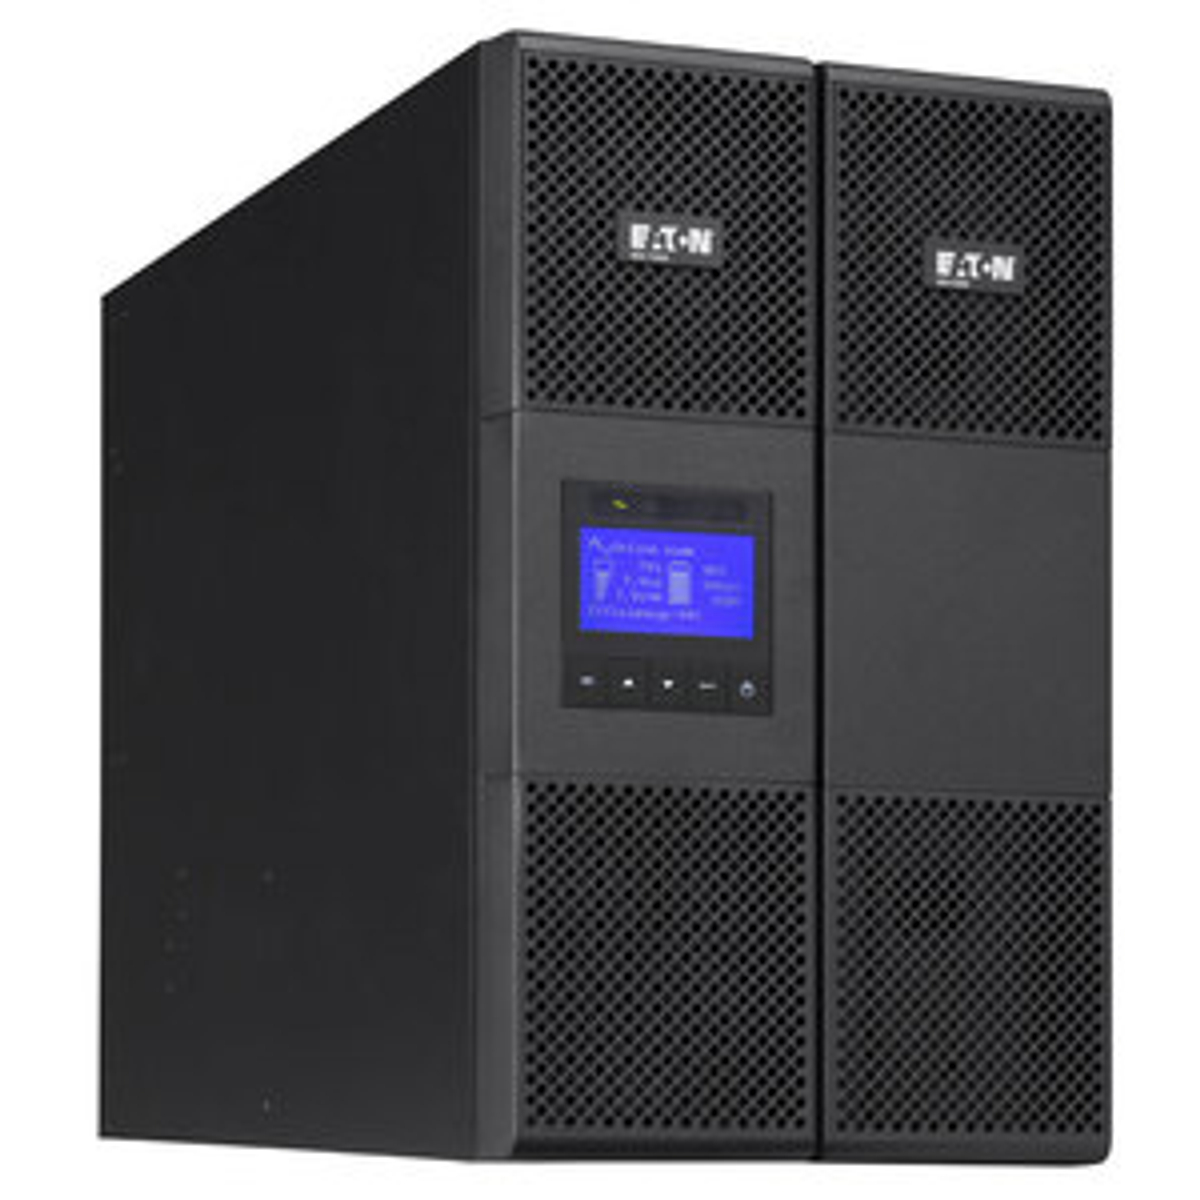 9SX 8000i (8000VA/7200w) UPS